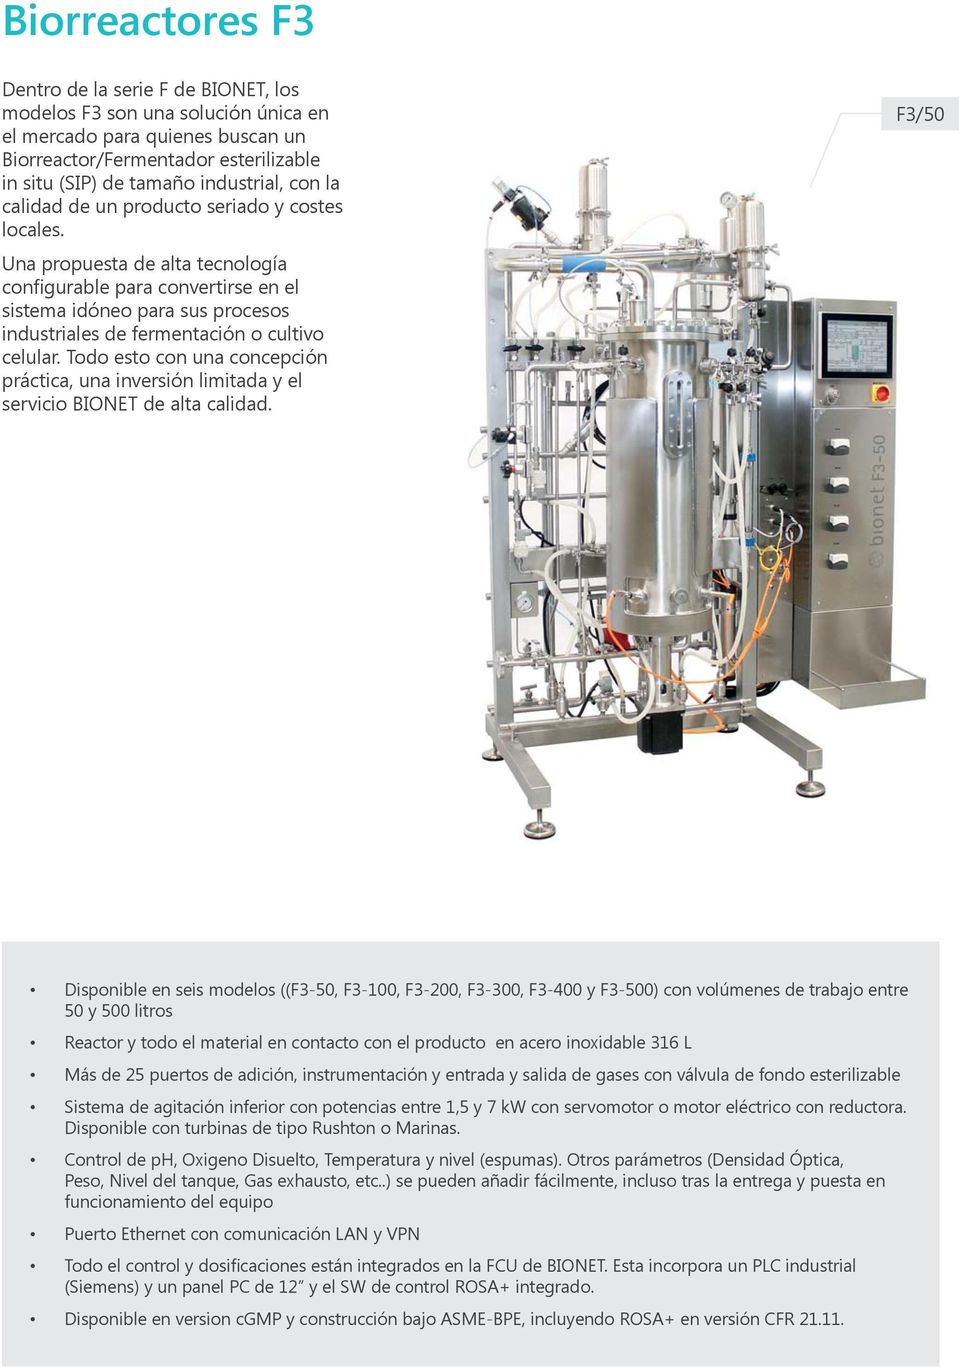 Una propuesta de alta tecnología configurable para convertirse en el sistema idóneo para sus procesos industriales de fermentación o cultivo celular.